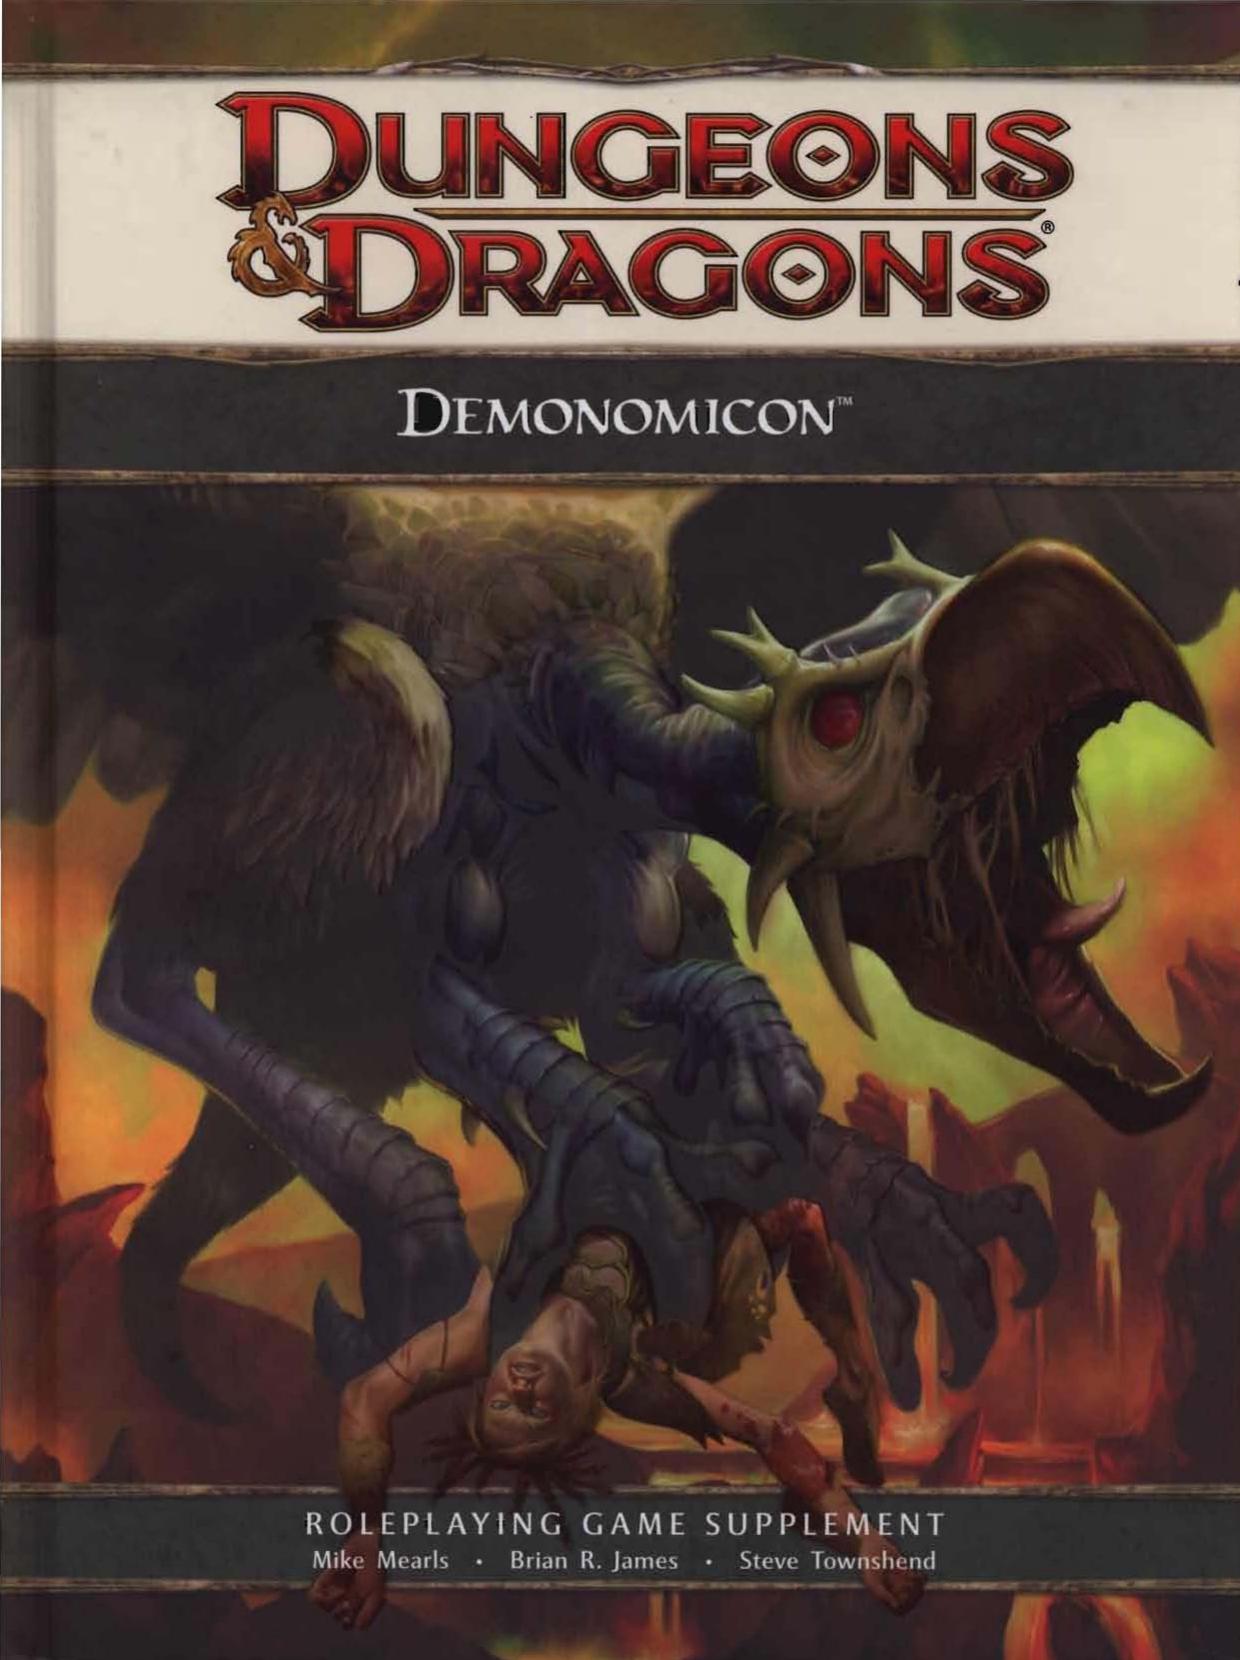 Demonomicon: A 4th Edition D&D Supplement